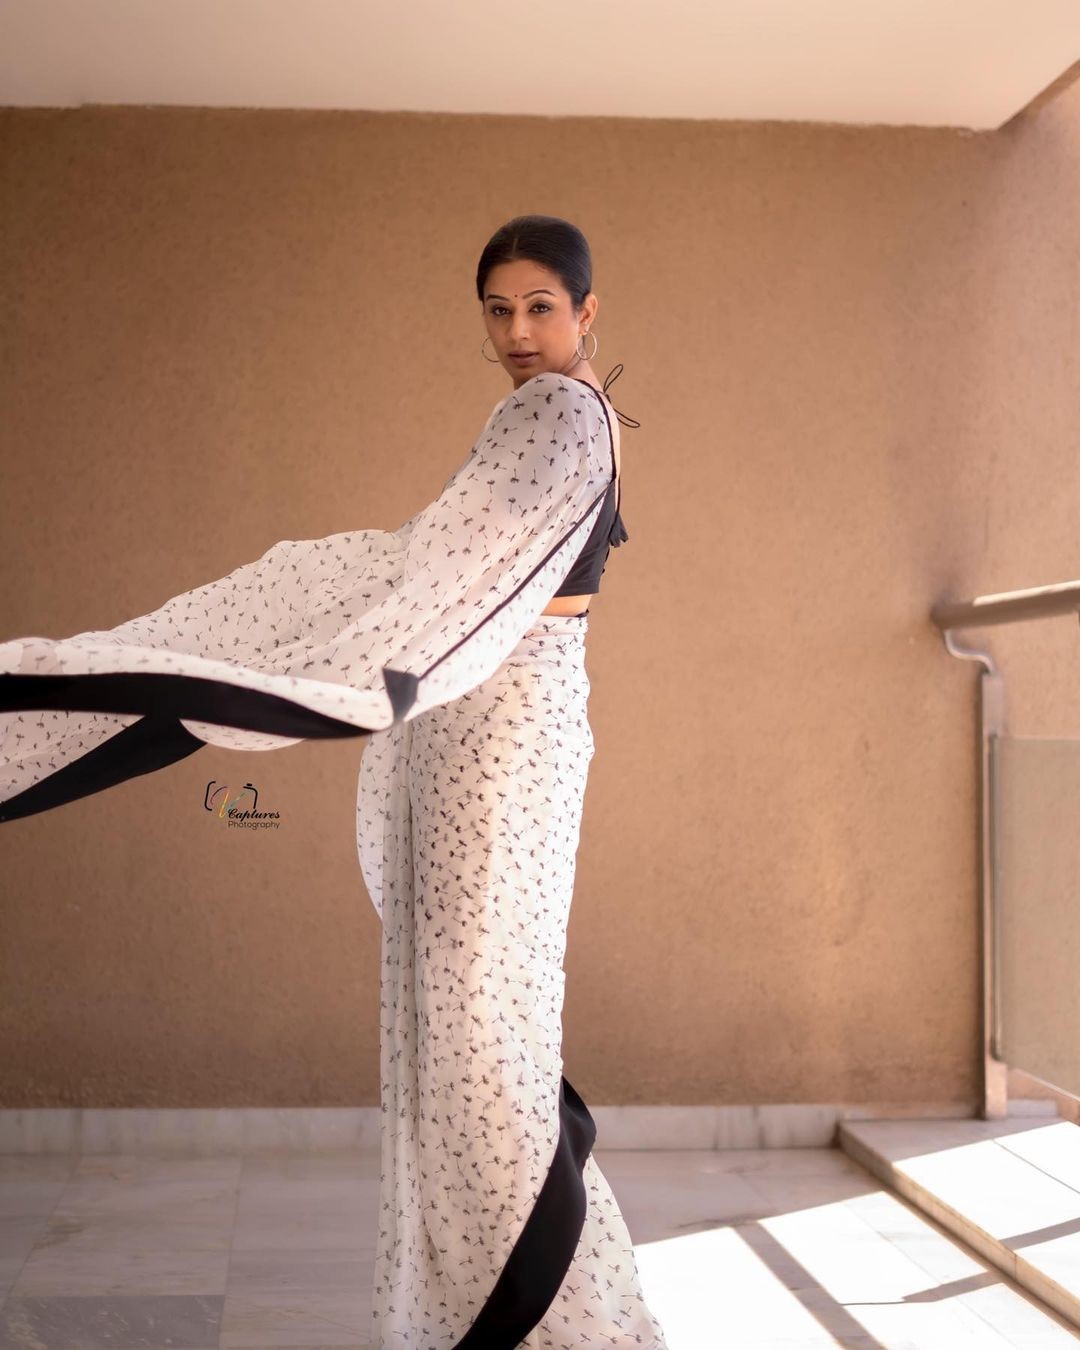 Stunning Priyamani in saree.